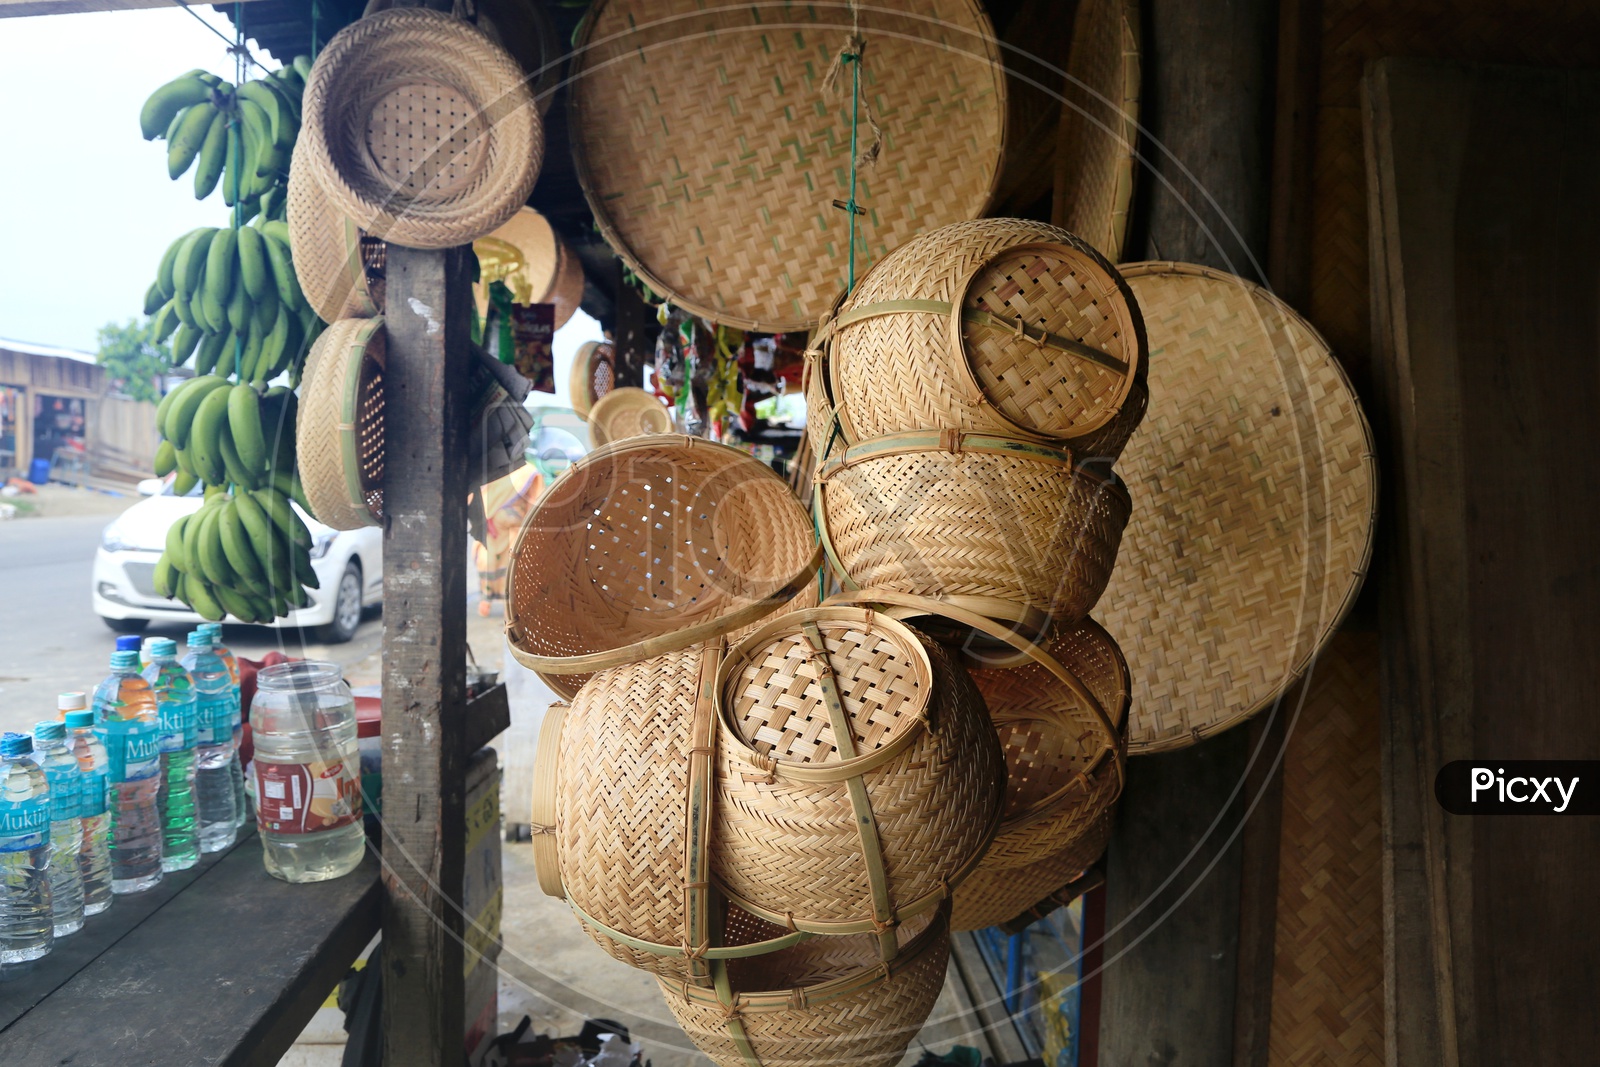 Bamboo basket